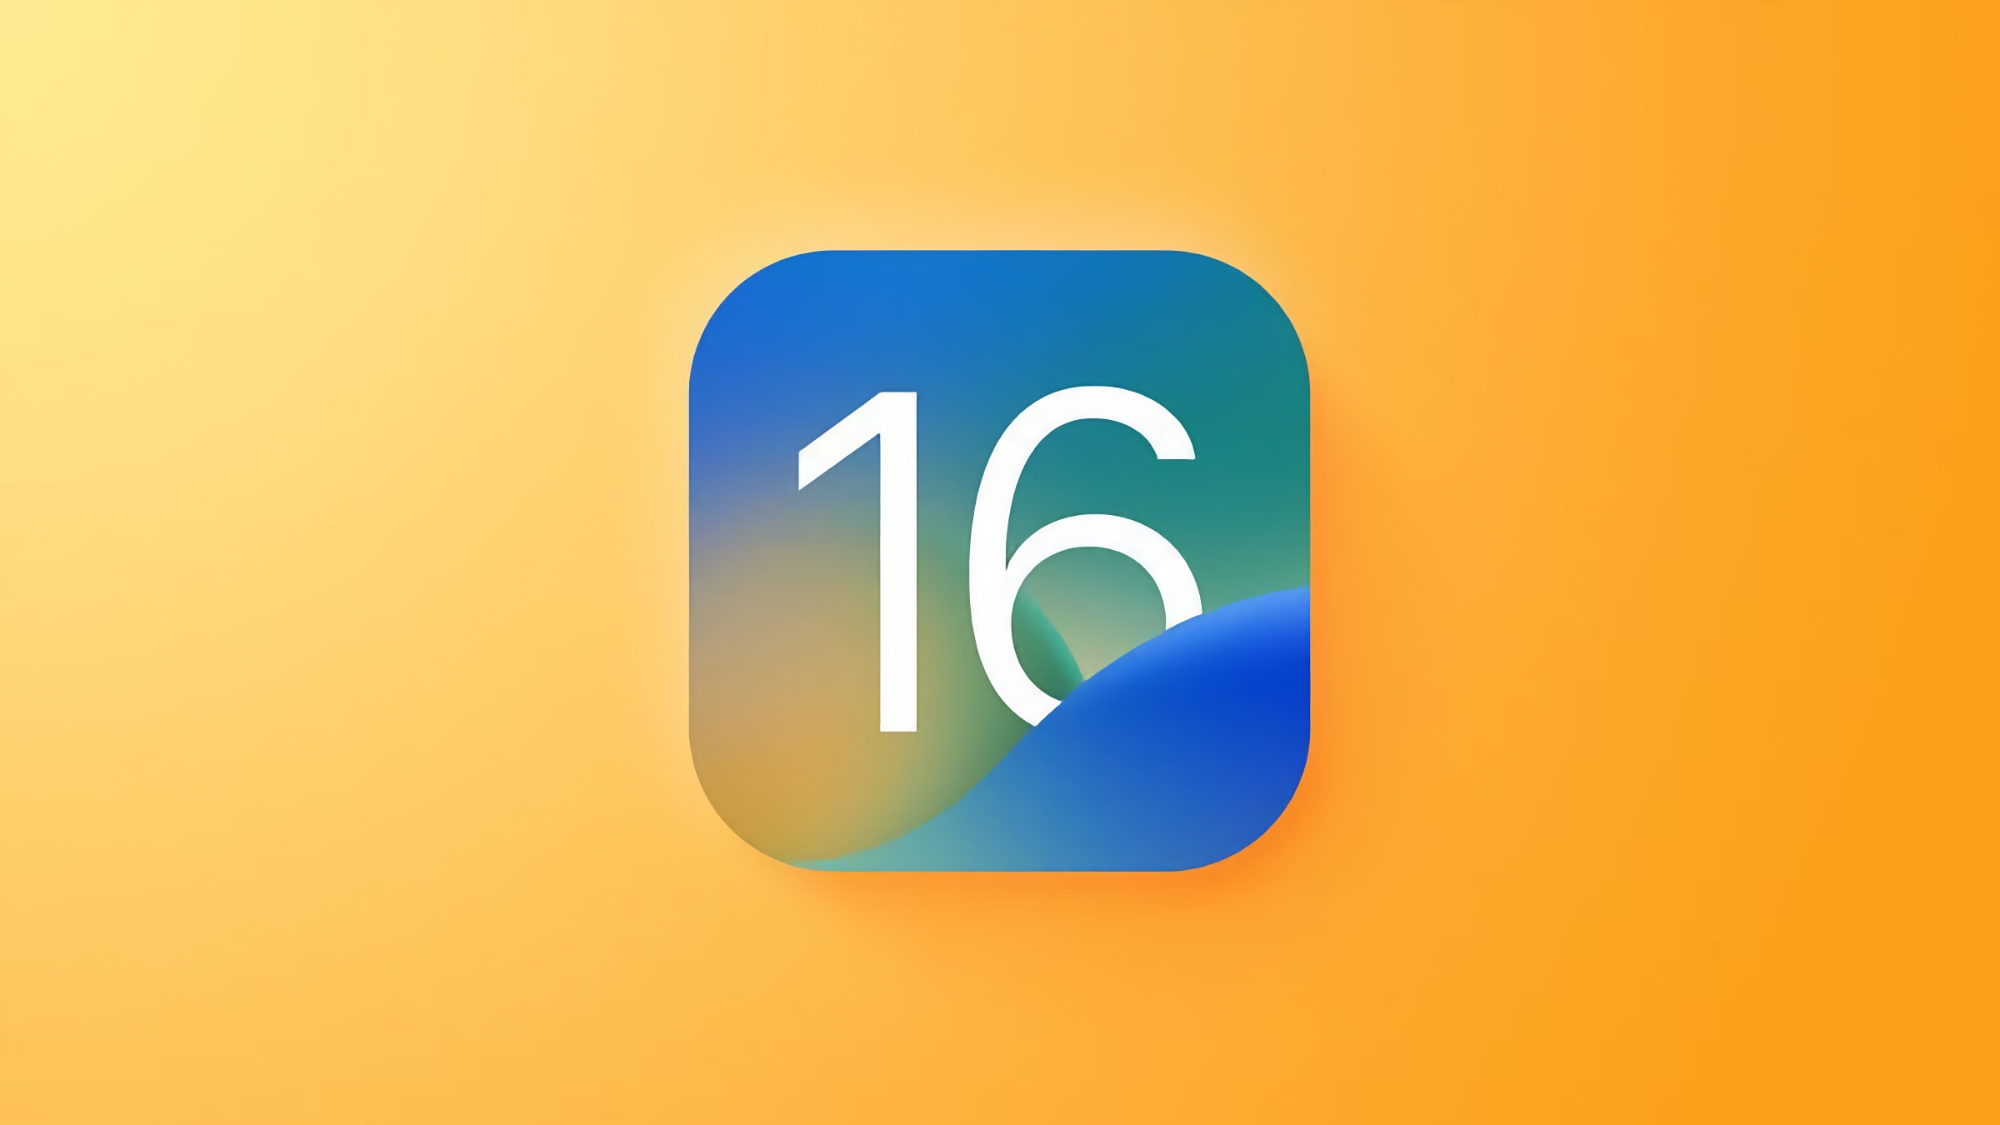 Jetzt ist es offiziell: Apple wird am 24. Oktober eine stabile Version von iOS 16.1 zusammen mit iPadOS 16.1 und macOS Ventura vorstellen